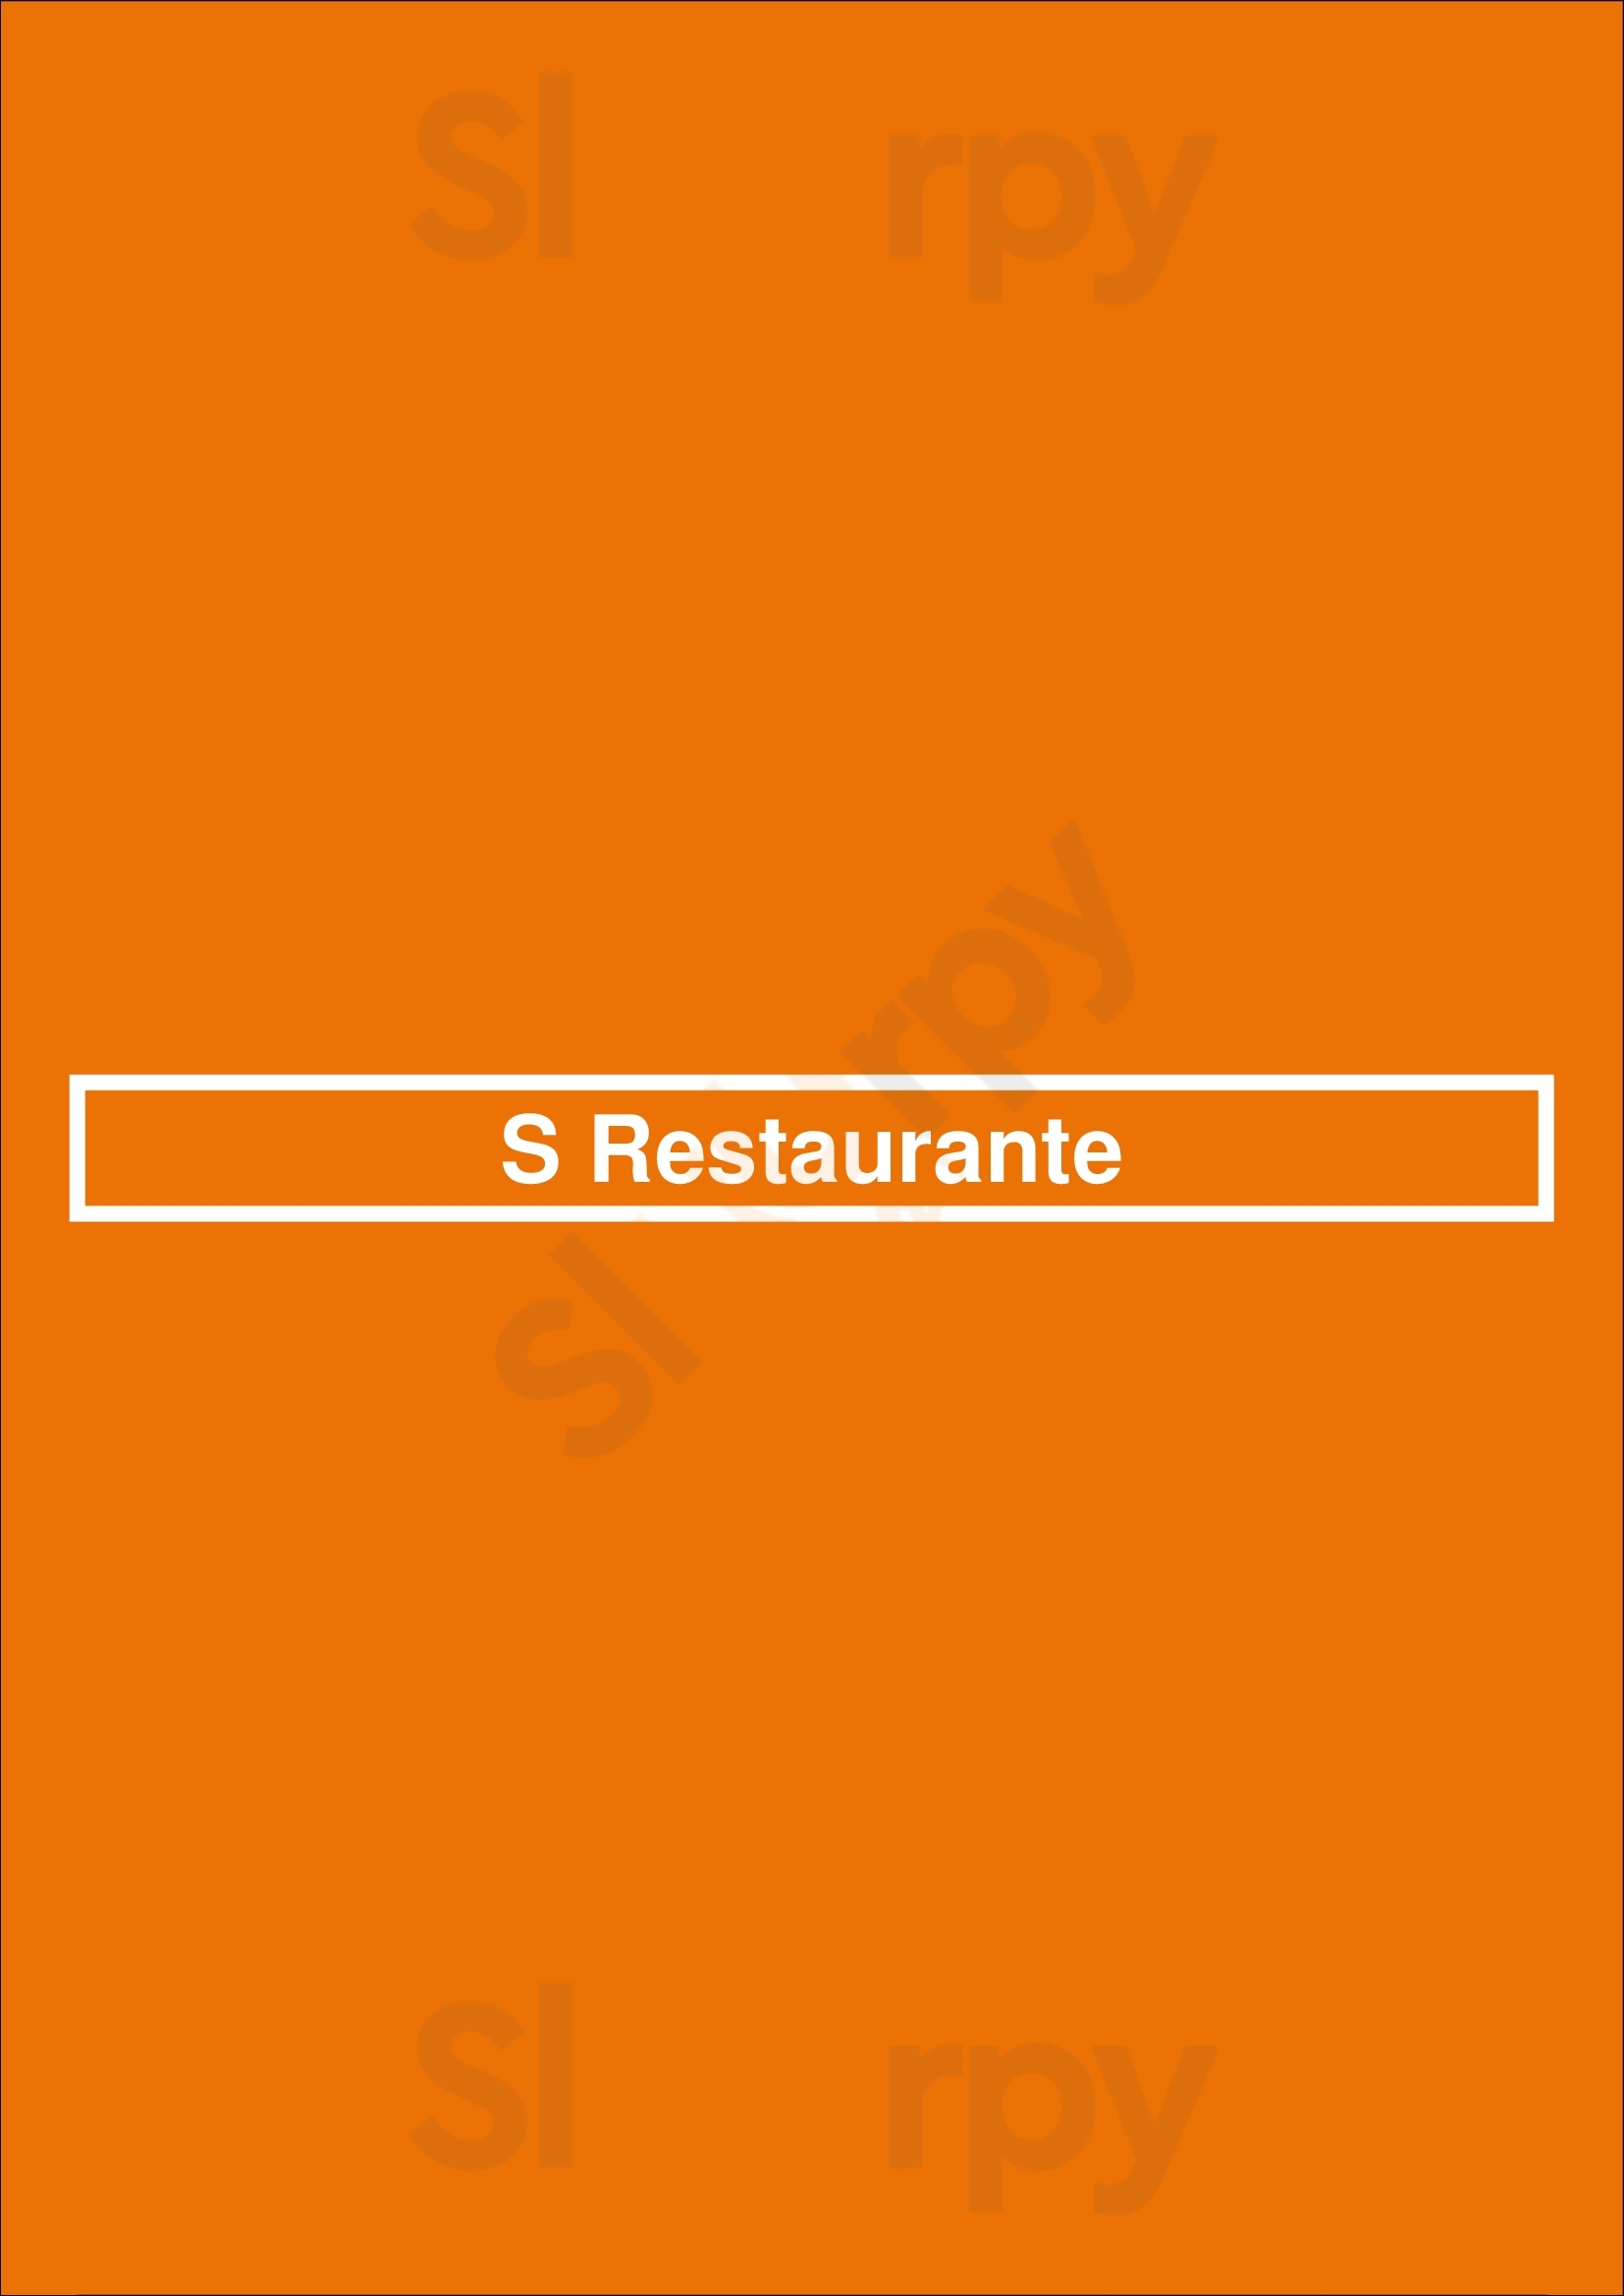 S Restaurante Lisboa Menu - 1